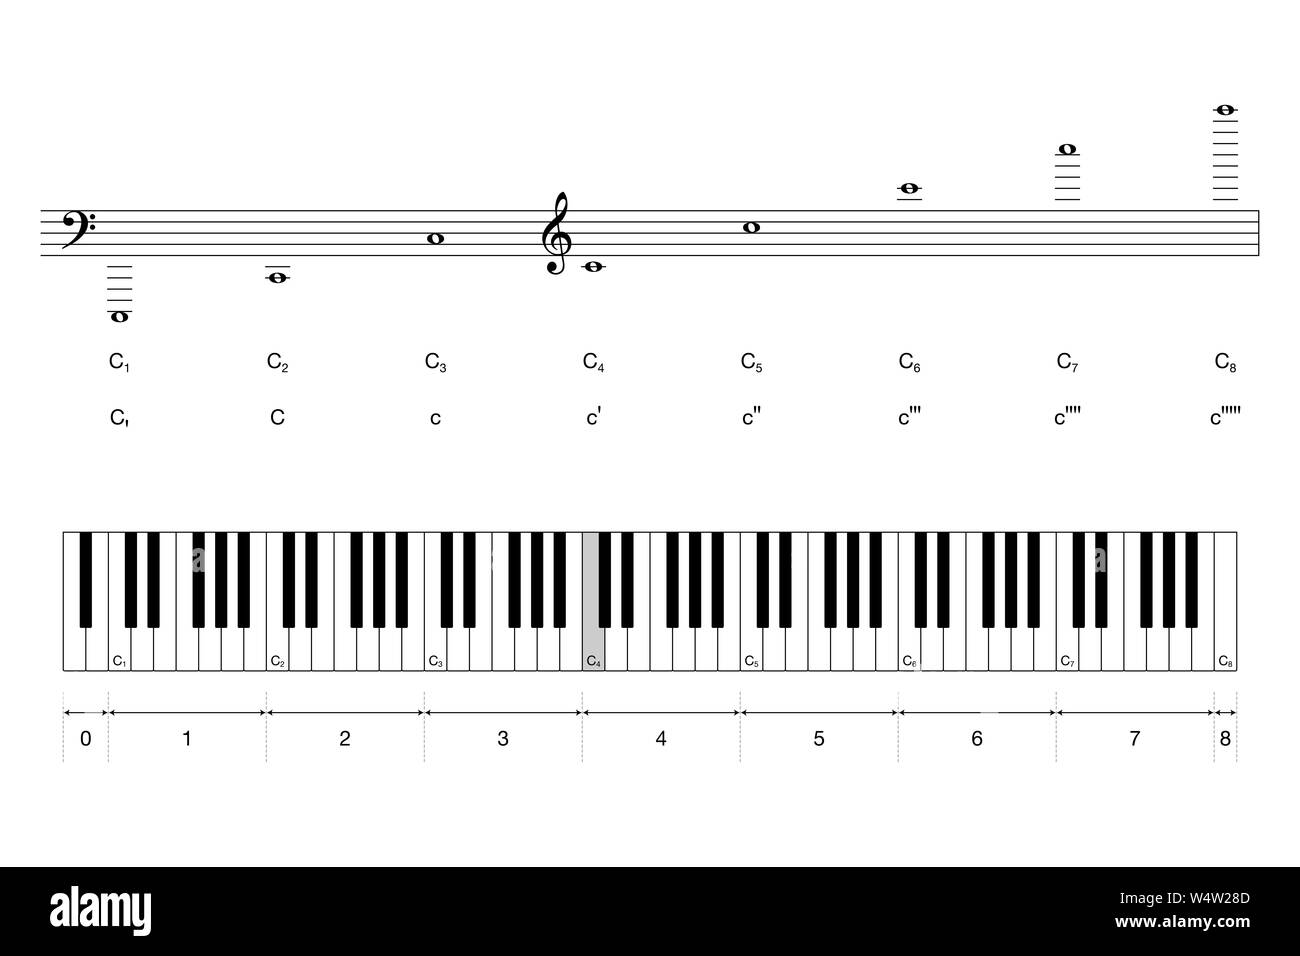 Octaves de piano à clavier avec la notation scientifique et pas de  Helmholtz. Milieu C'est coloré en gris. 88 touches et 7 octaves Photo Stock  - Alamy